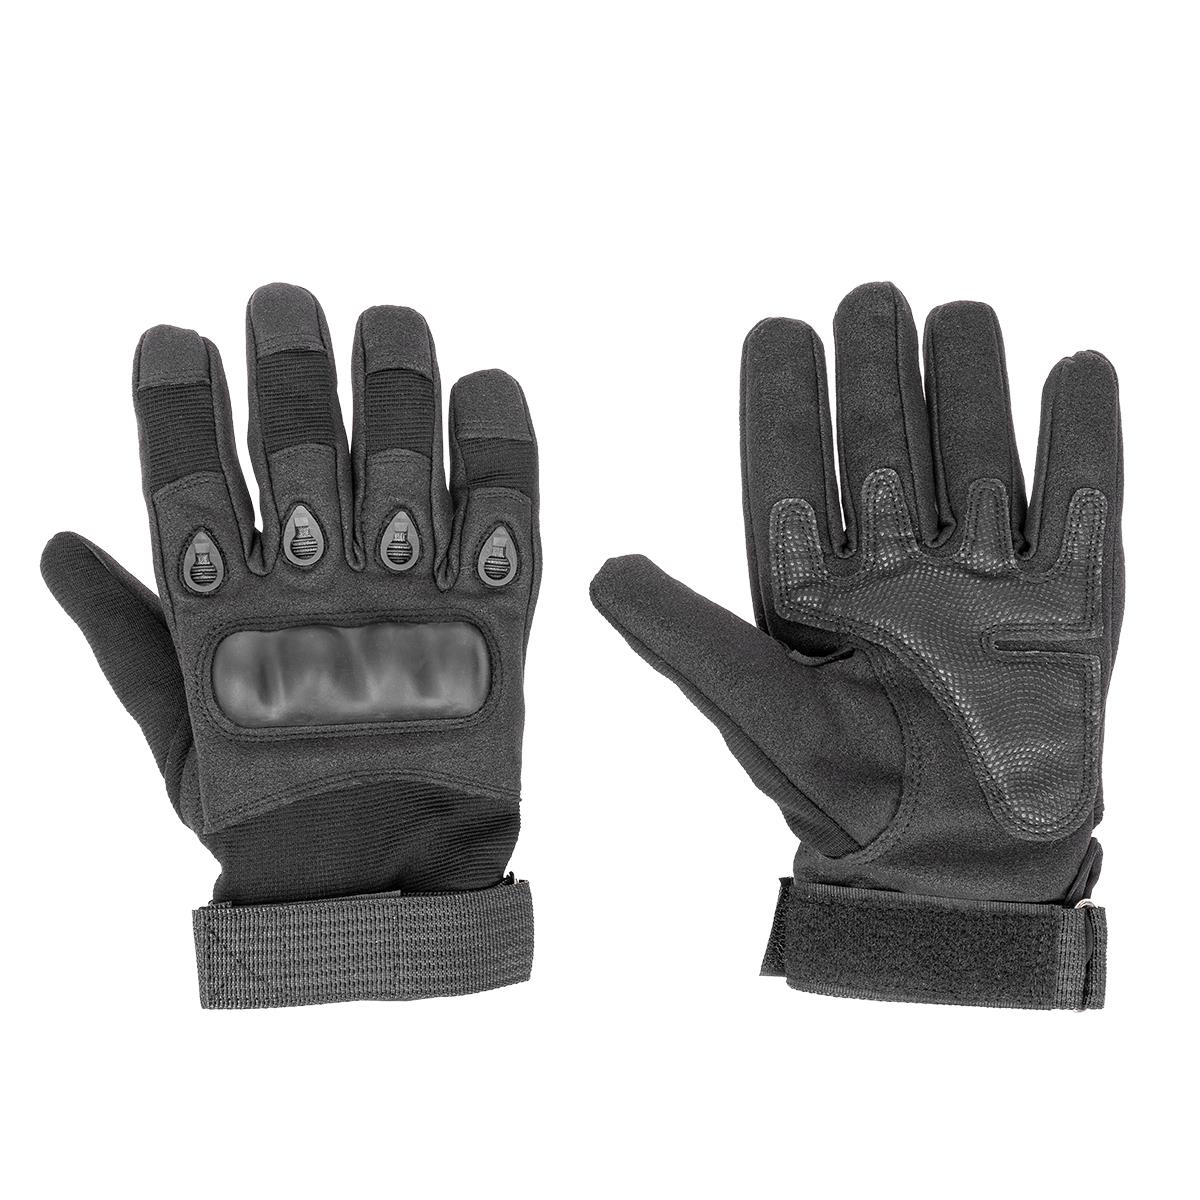 Перчатки тактические перчатки husqvarna technical c защитой от порезов бензопилой р 10 5950034 10